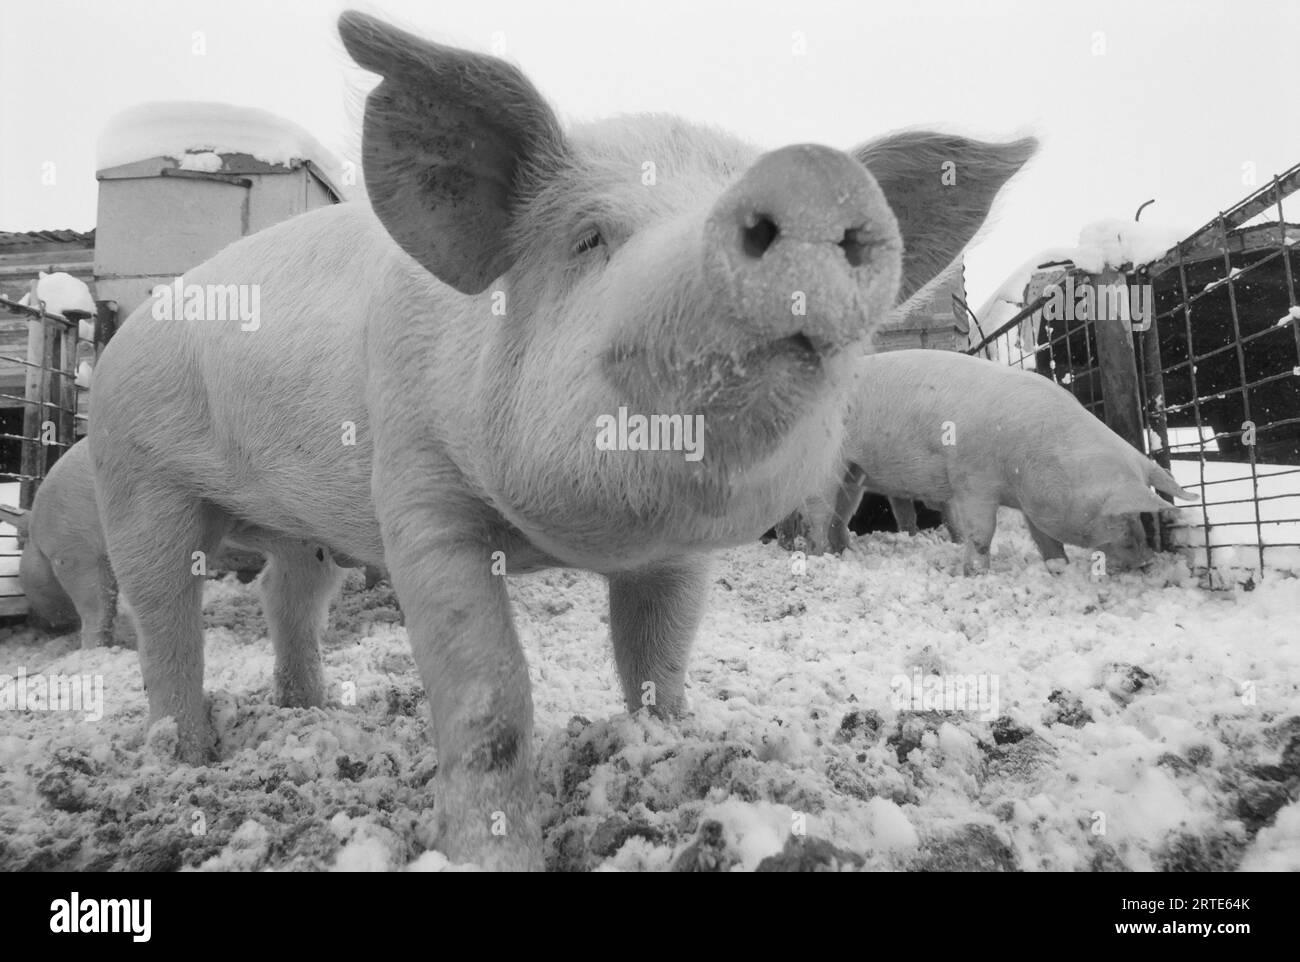 Vue rapprochée d'un jeune cochon dans un enclos enneigé ; Bennet, Nebraska, États-Unis d'Amérique Banque D'Images